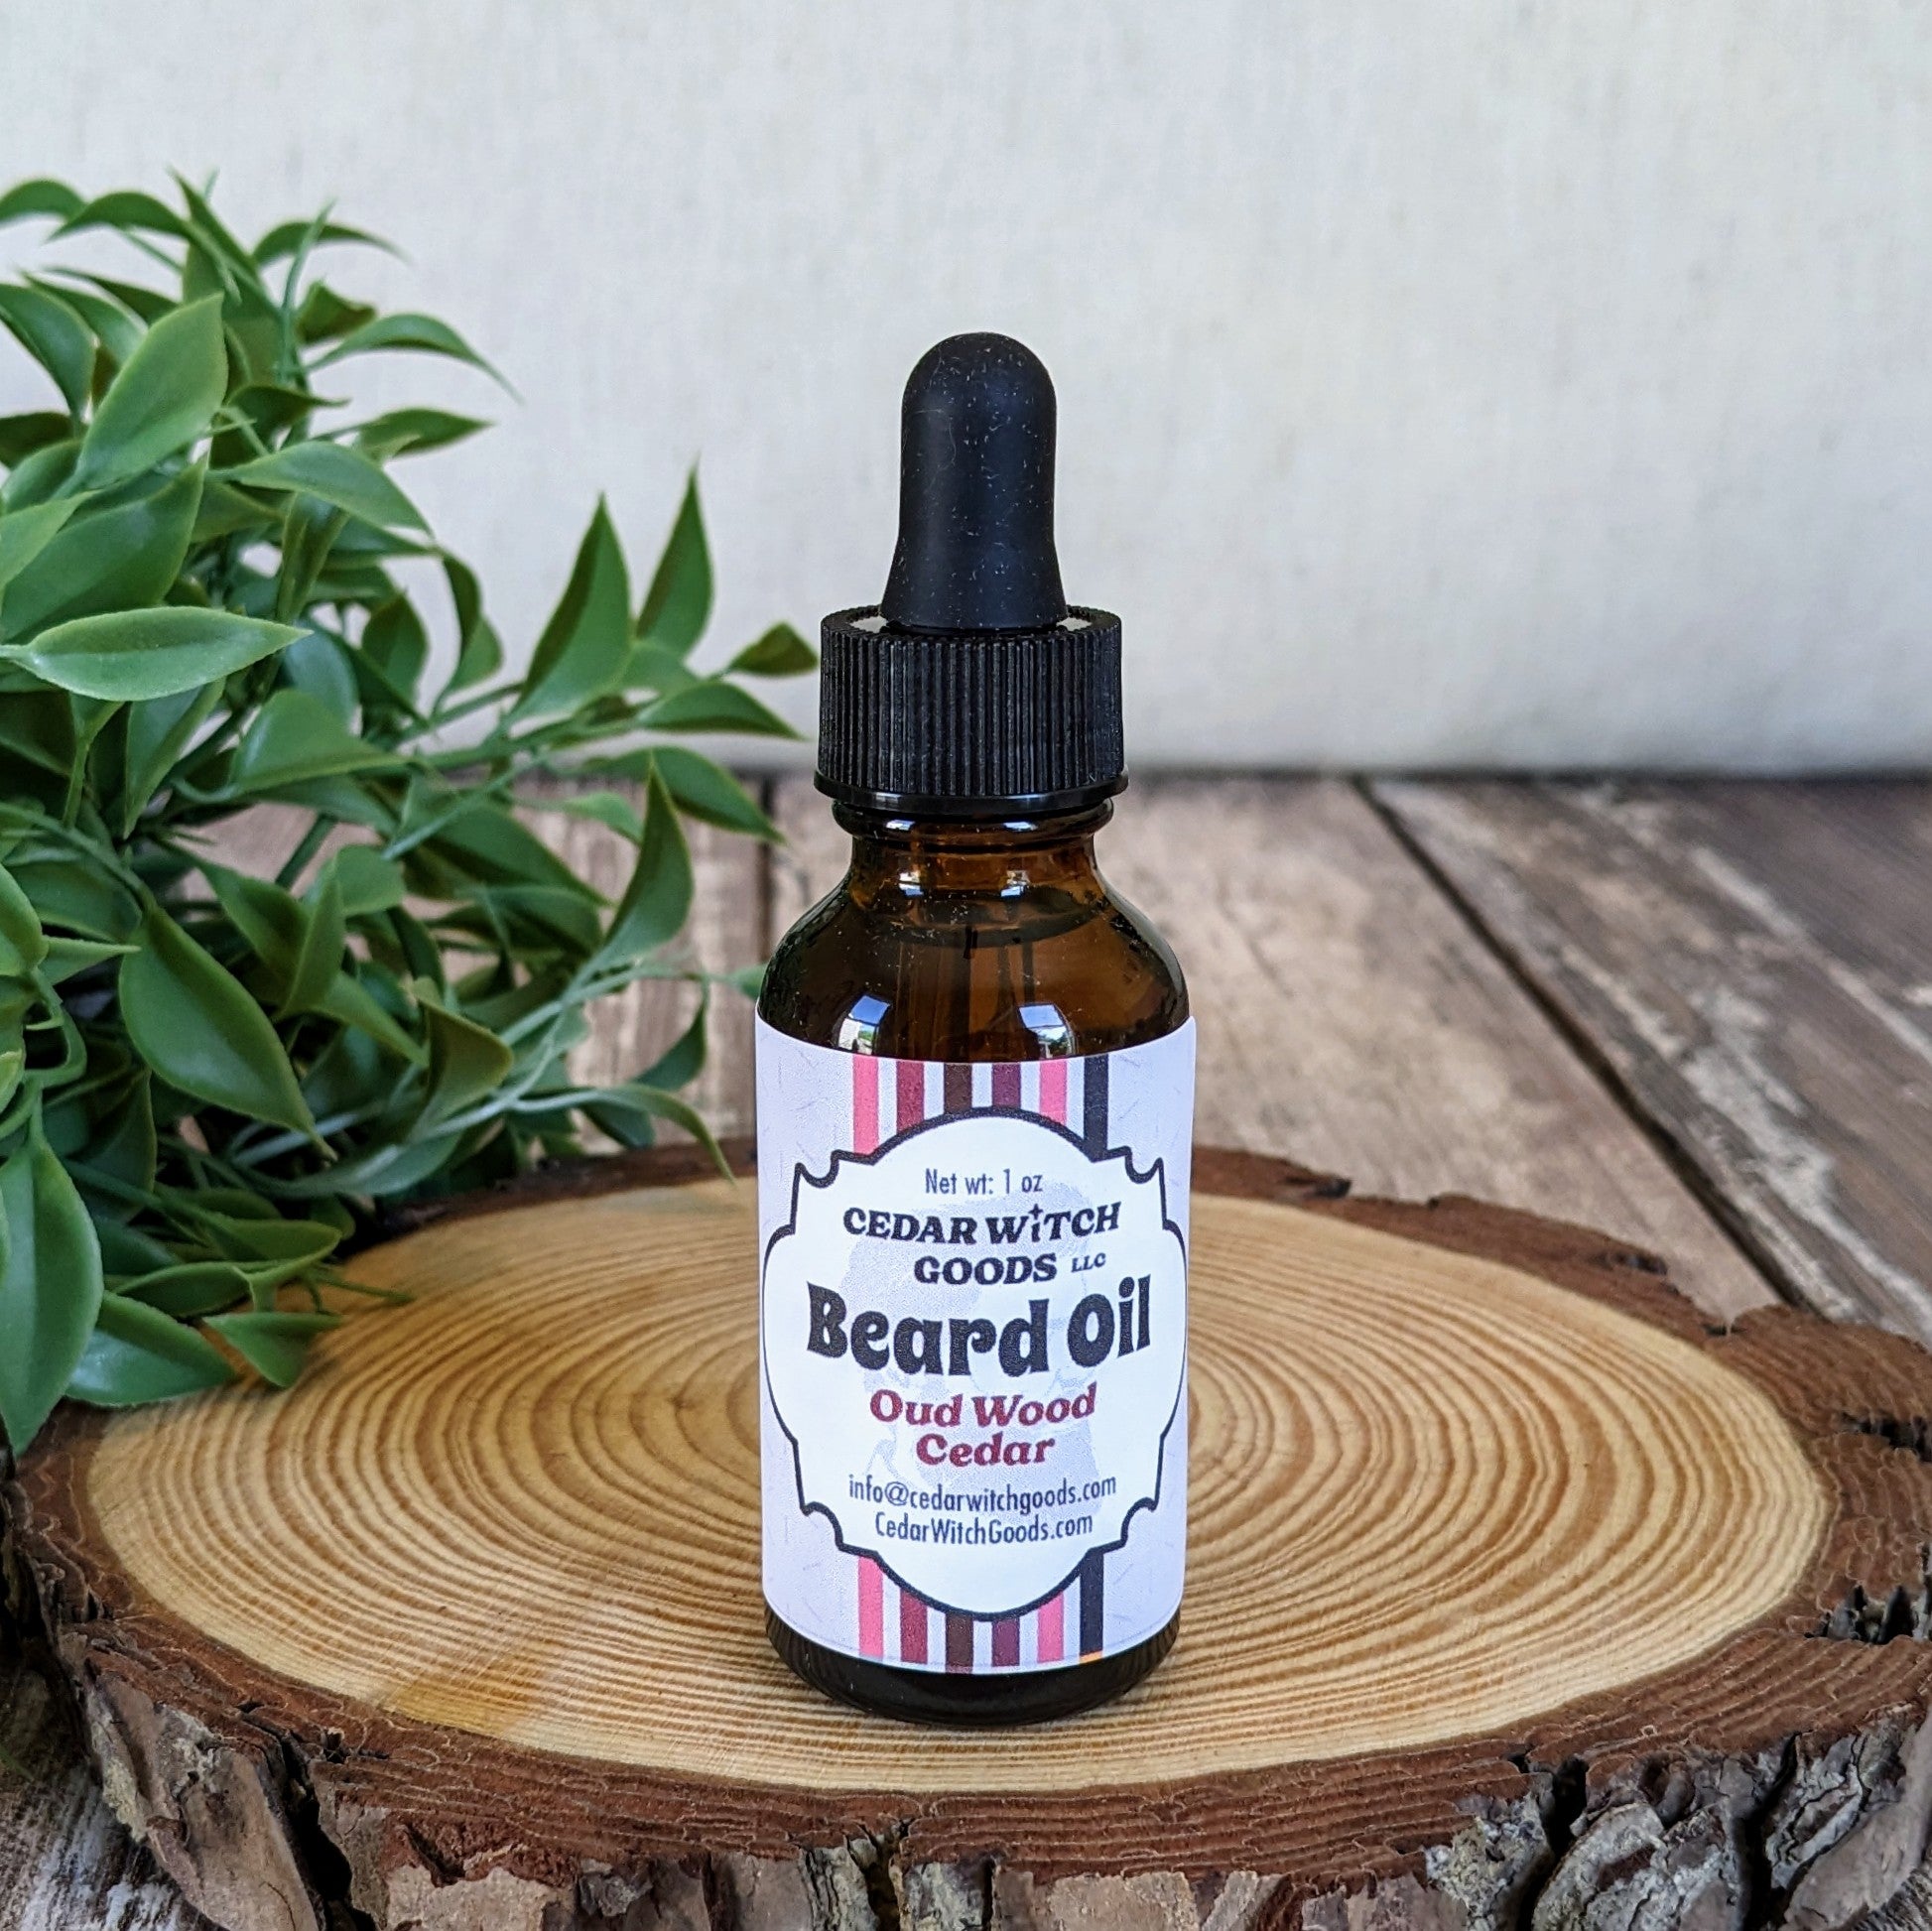  Oud Wood Cedar Beard Oil | 1 oz Dropper Bottle